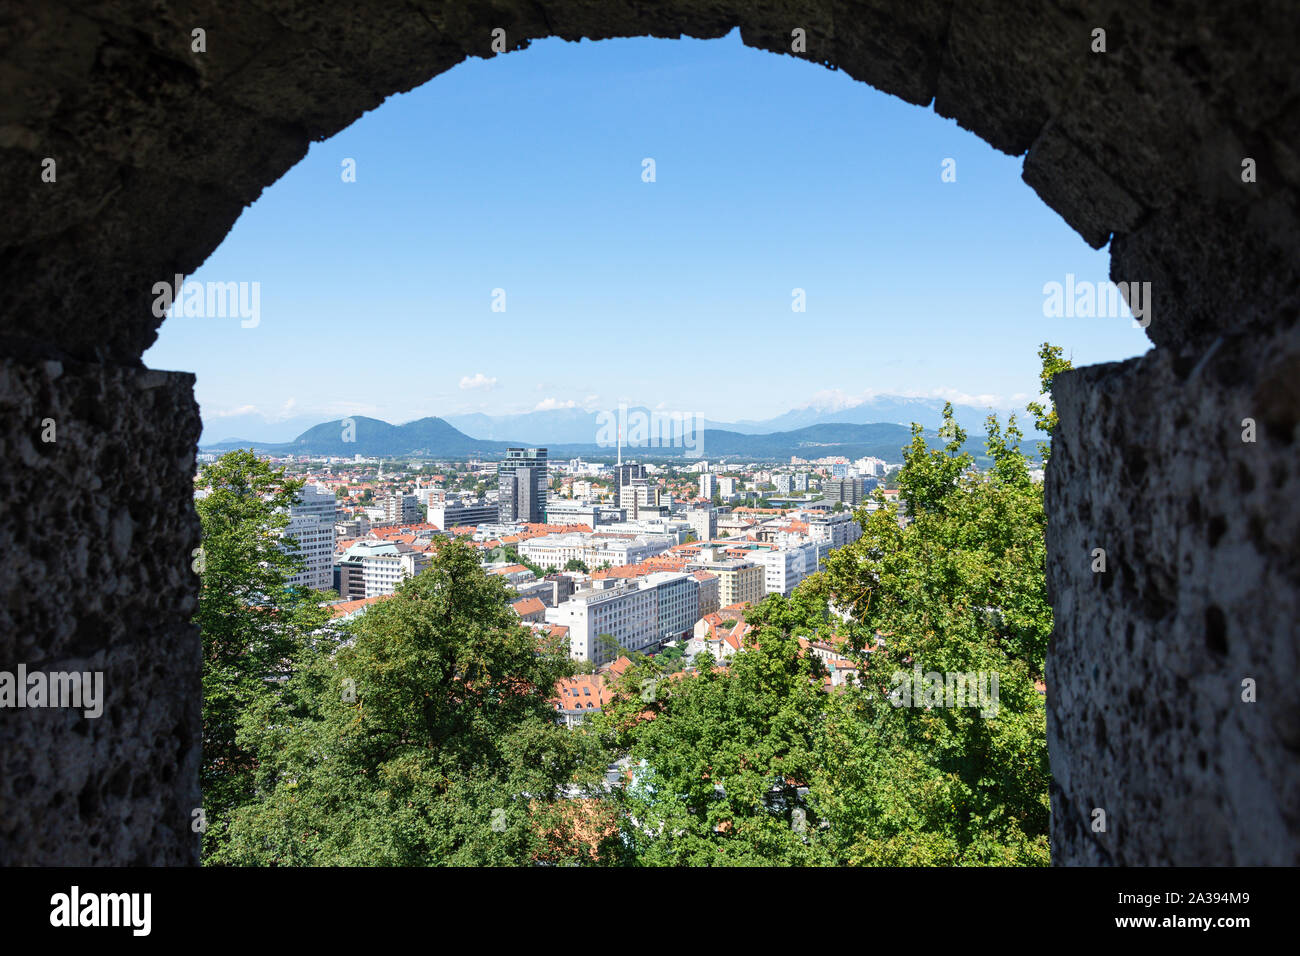 Vista desde el interior de la ciudad, Casco antiguo Castillo de Ljubljana, Ljubljana, Eslovenia Foto de stock